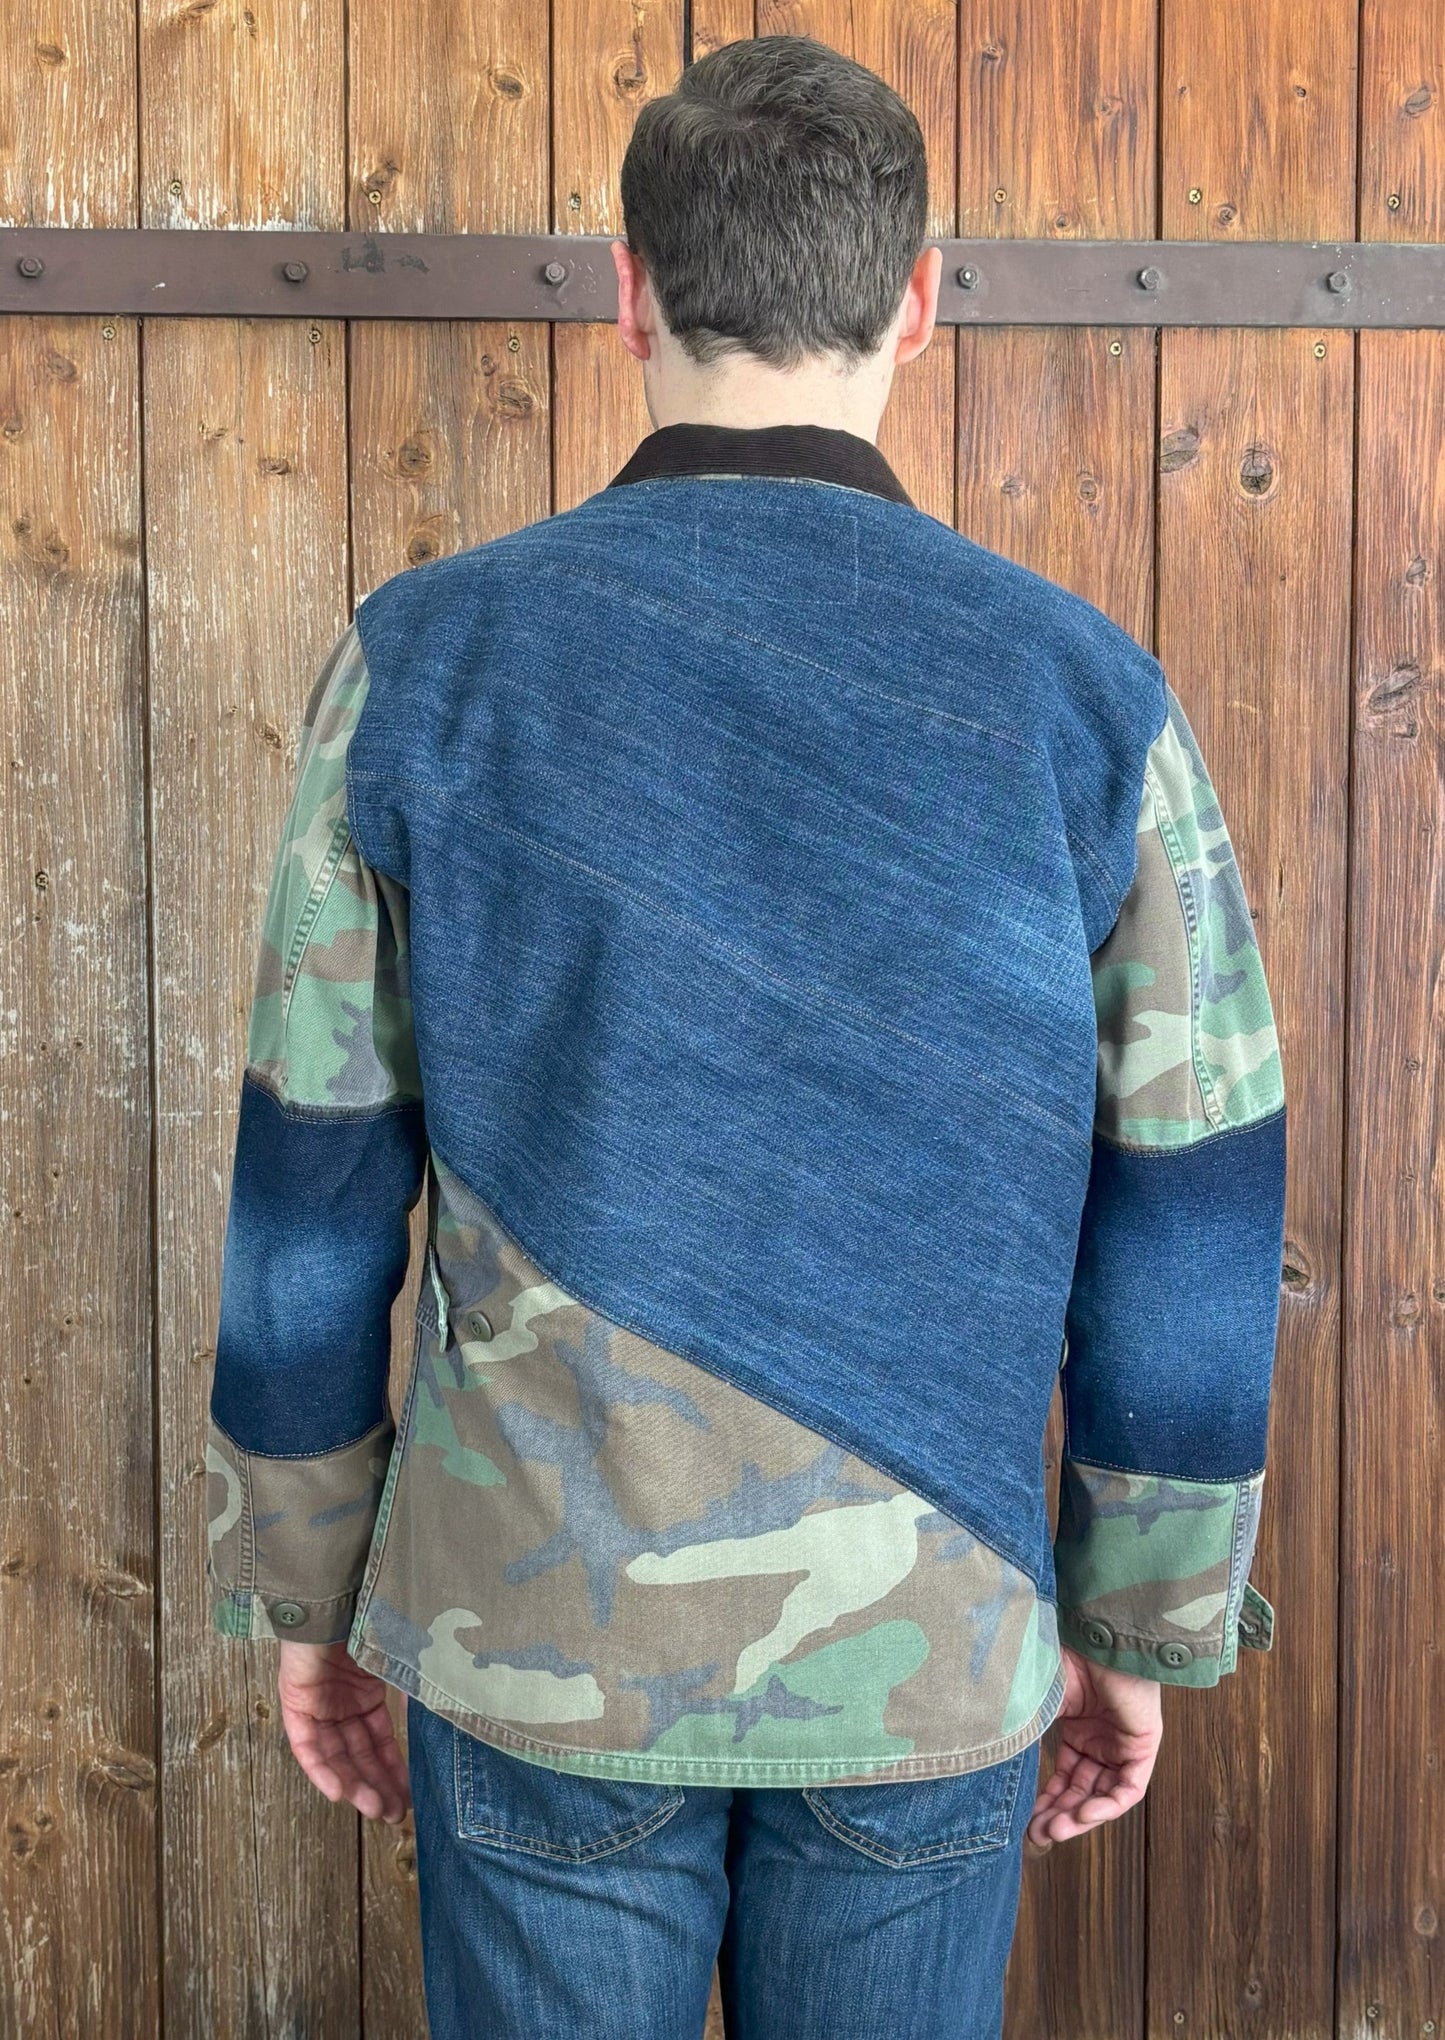 Diagonal verlaufender breiter Denim-Stoff auf der Rückseite der Camouflage-Jacke, mit dem unteren Teil weiterhin im Camouflage-Muster.